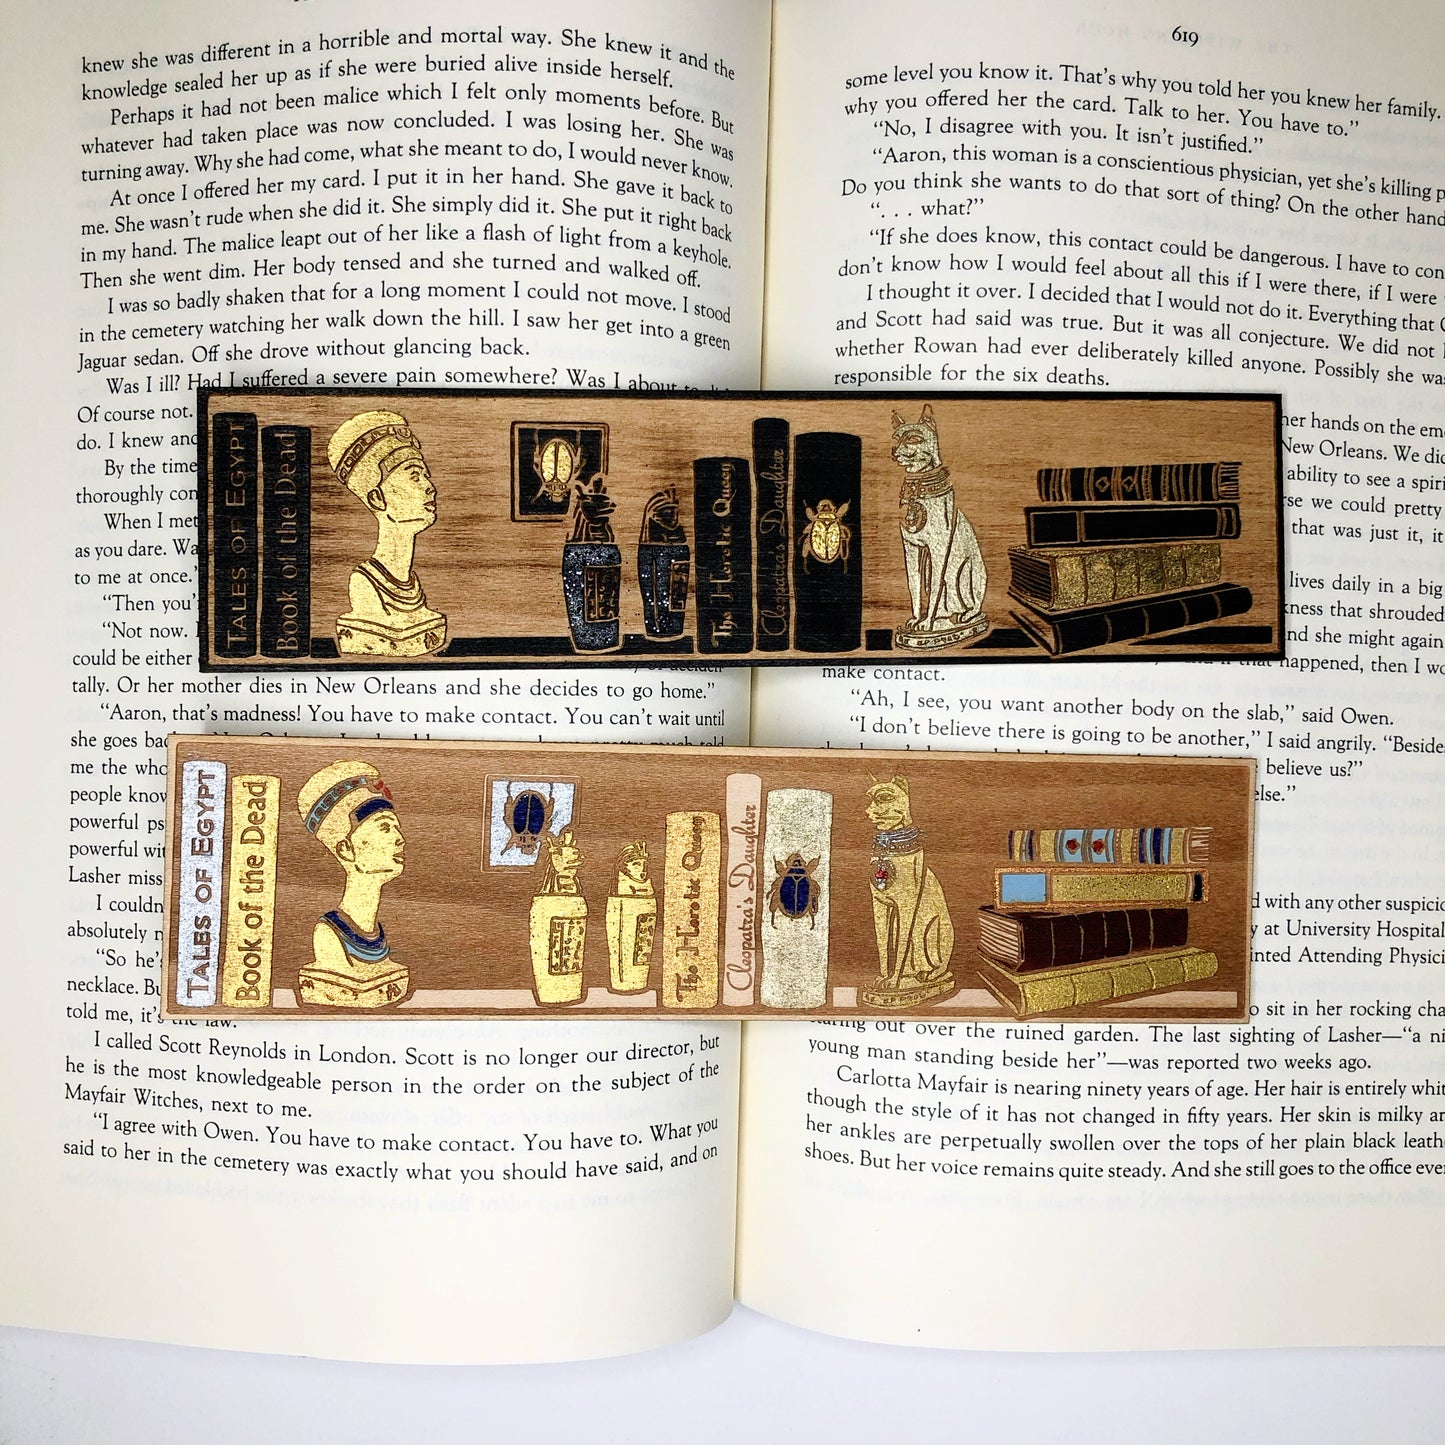 The Egyptology Shelf Wooden Bookmark